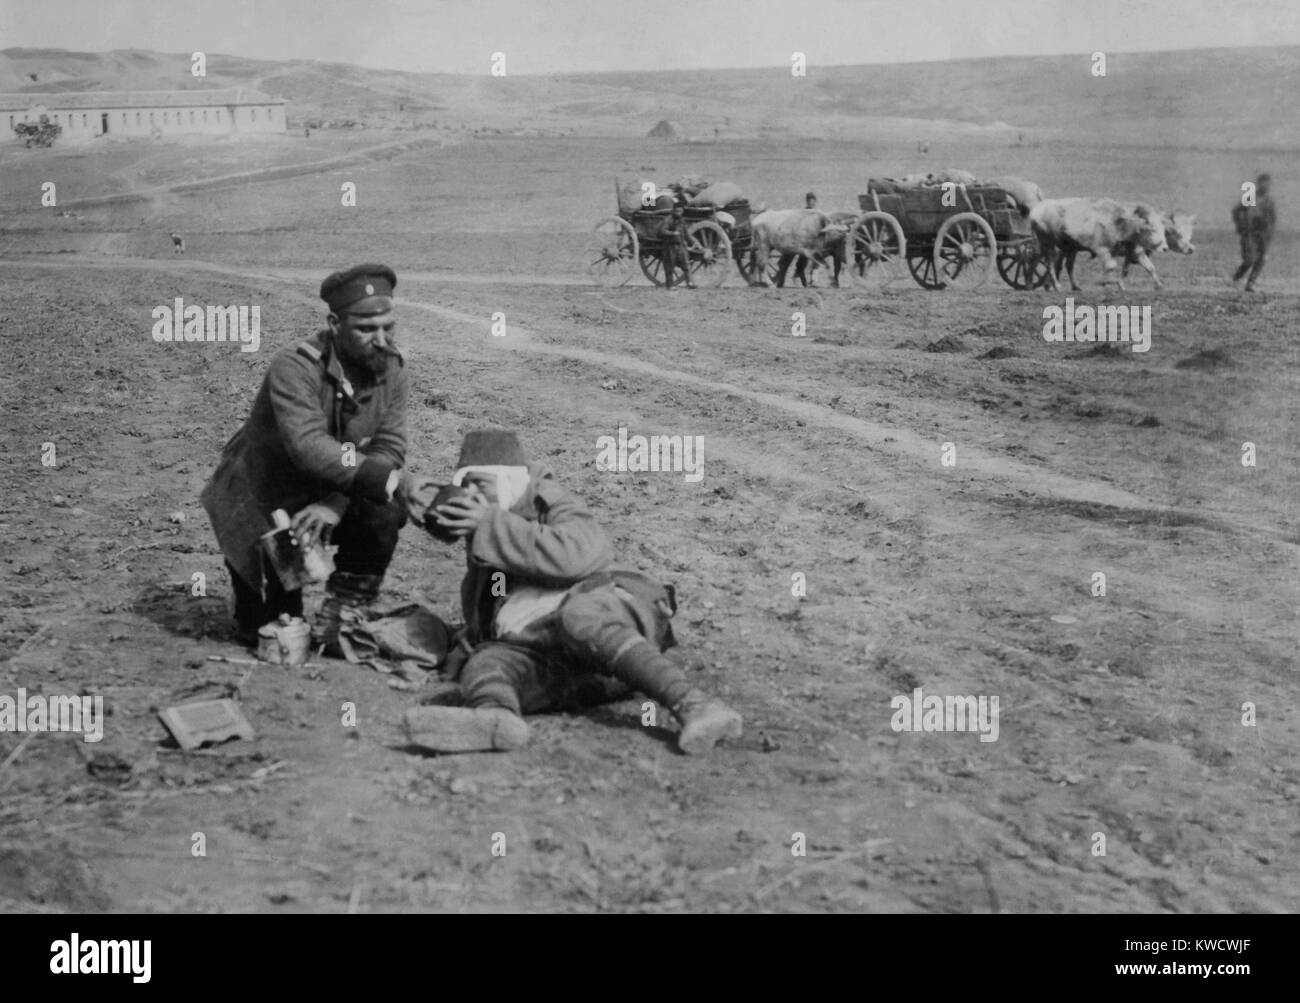 Siège d'Andrinople (Edirne) par Bulganian et les forces serbes, le 3 novembre 1912 -Le 26 mars, 1913. Soldat bulgare accorder à l'eau pour mourir Turk (BSLOC 2017 1 144) Banque D'Images